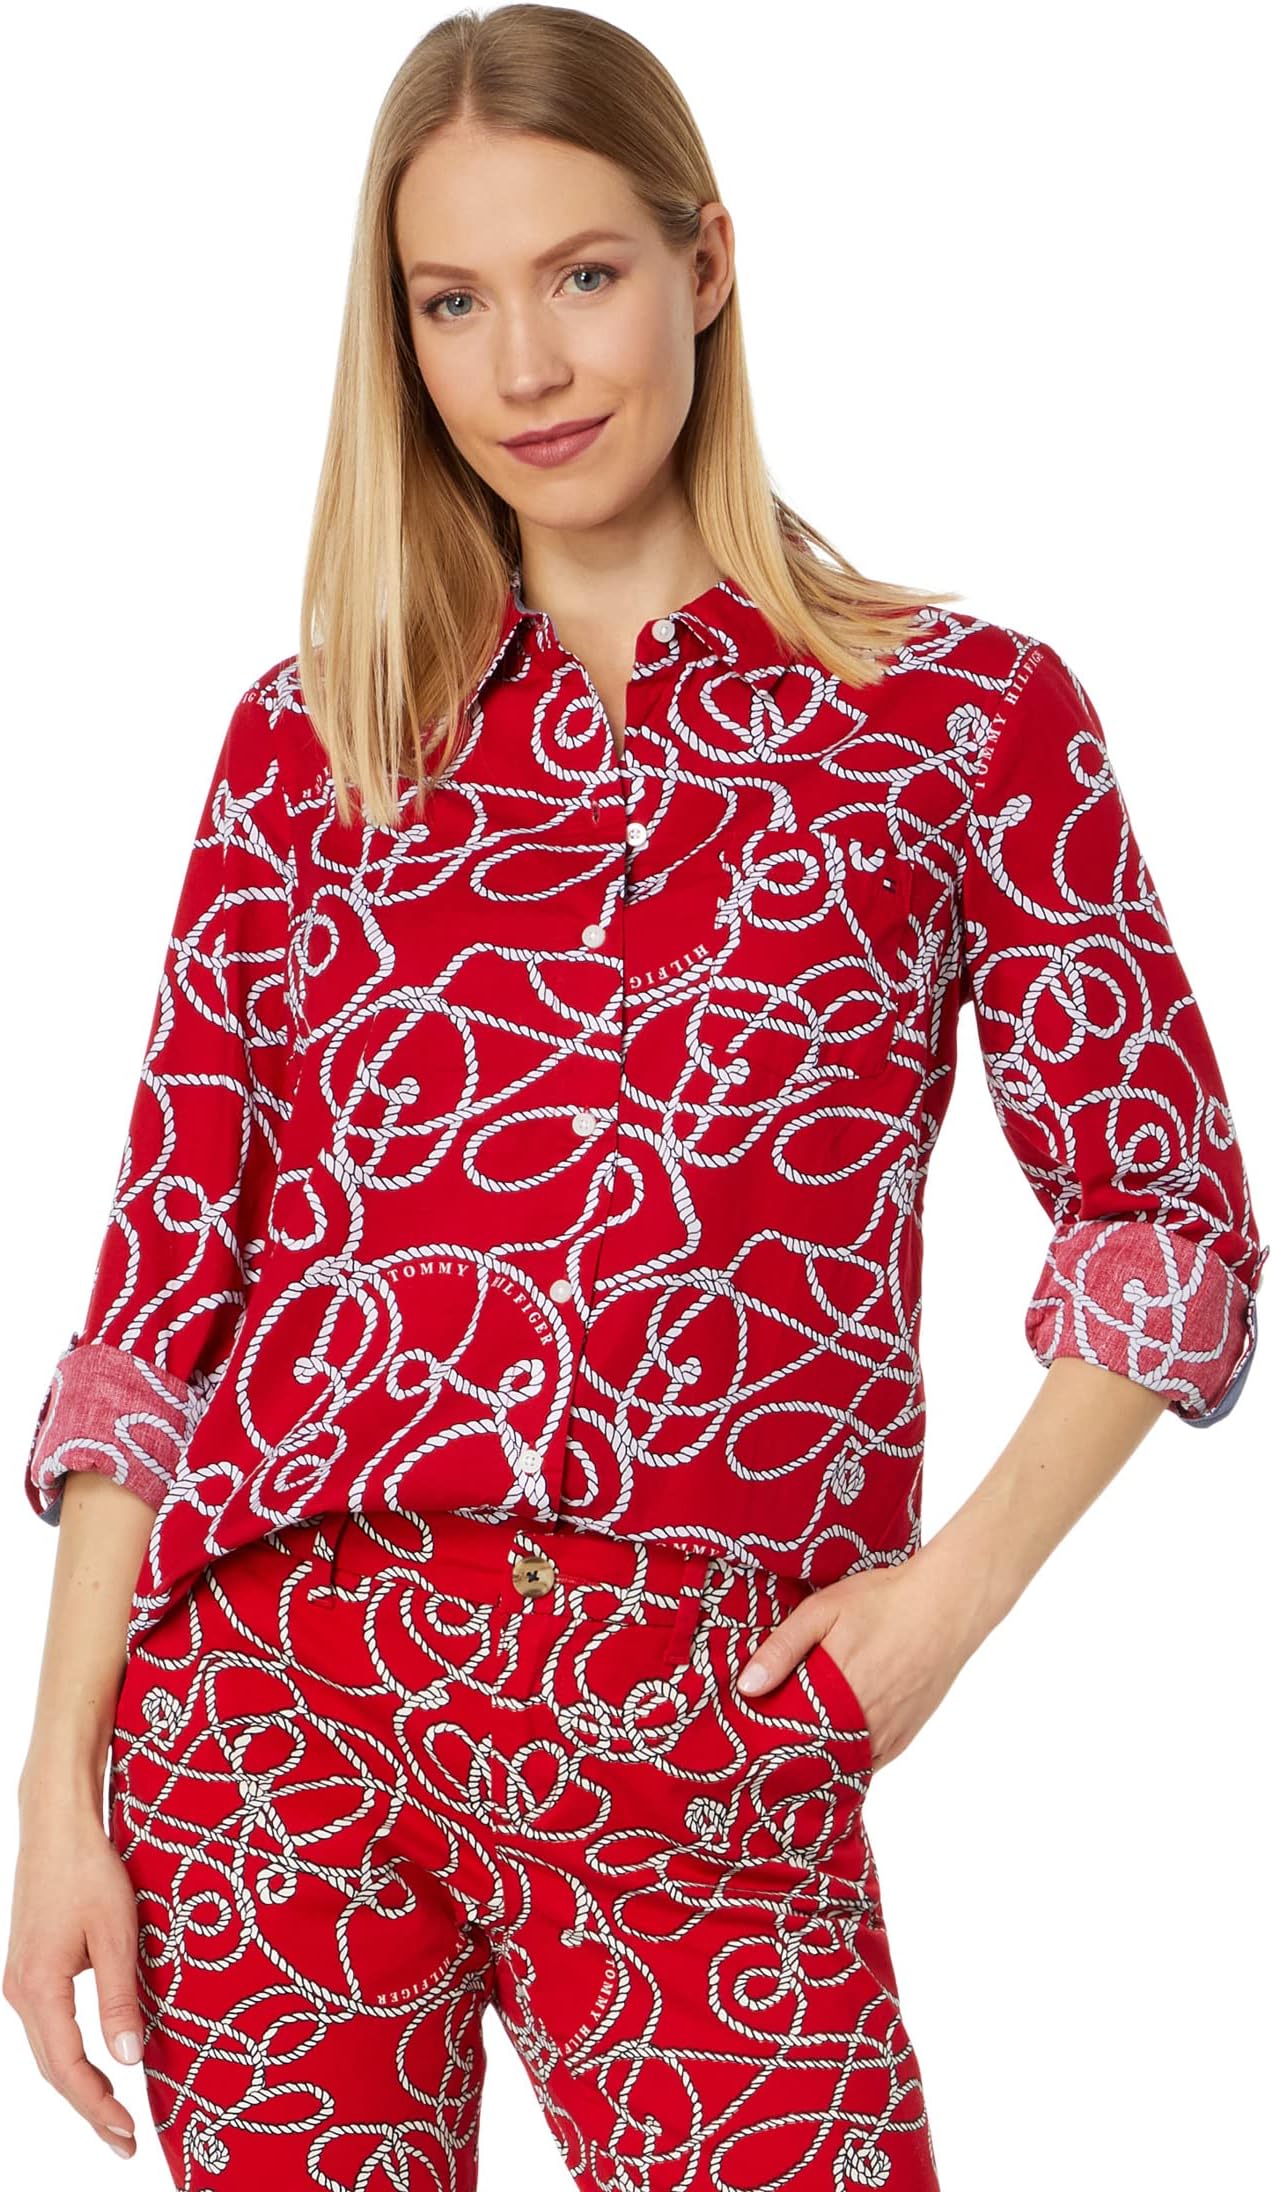 Рубашка с веревкой Roll Tab Tommy Hilfiger, цвет Knotty Ropes/Scarlet Multi цена и фото